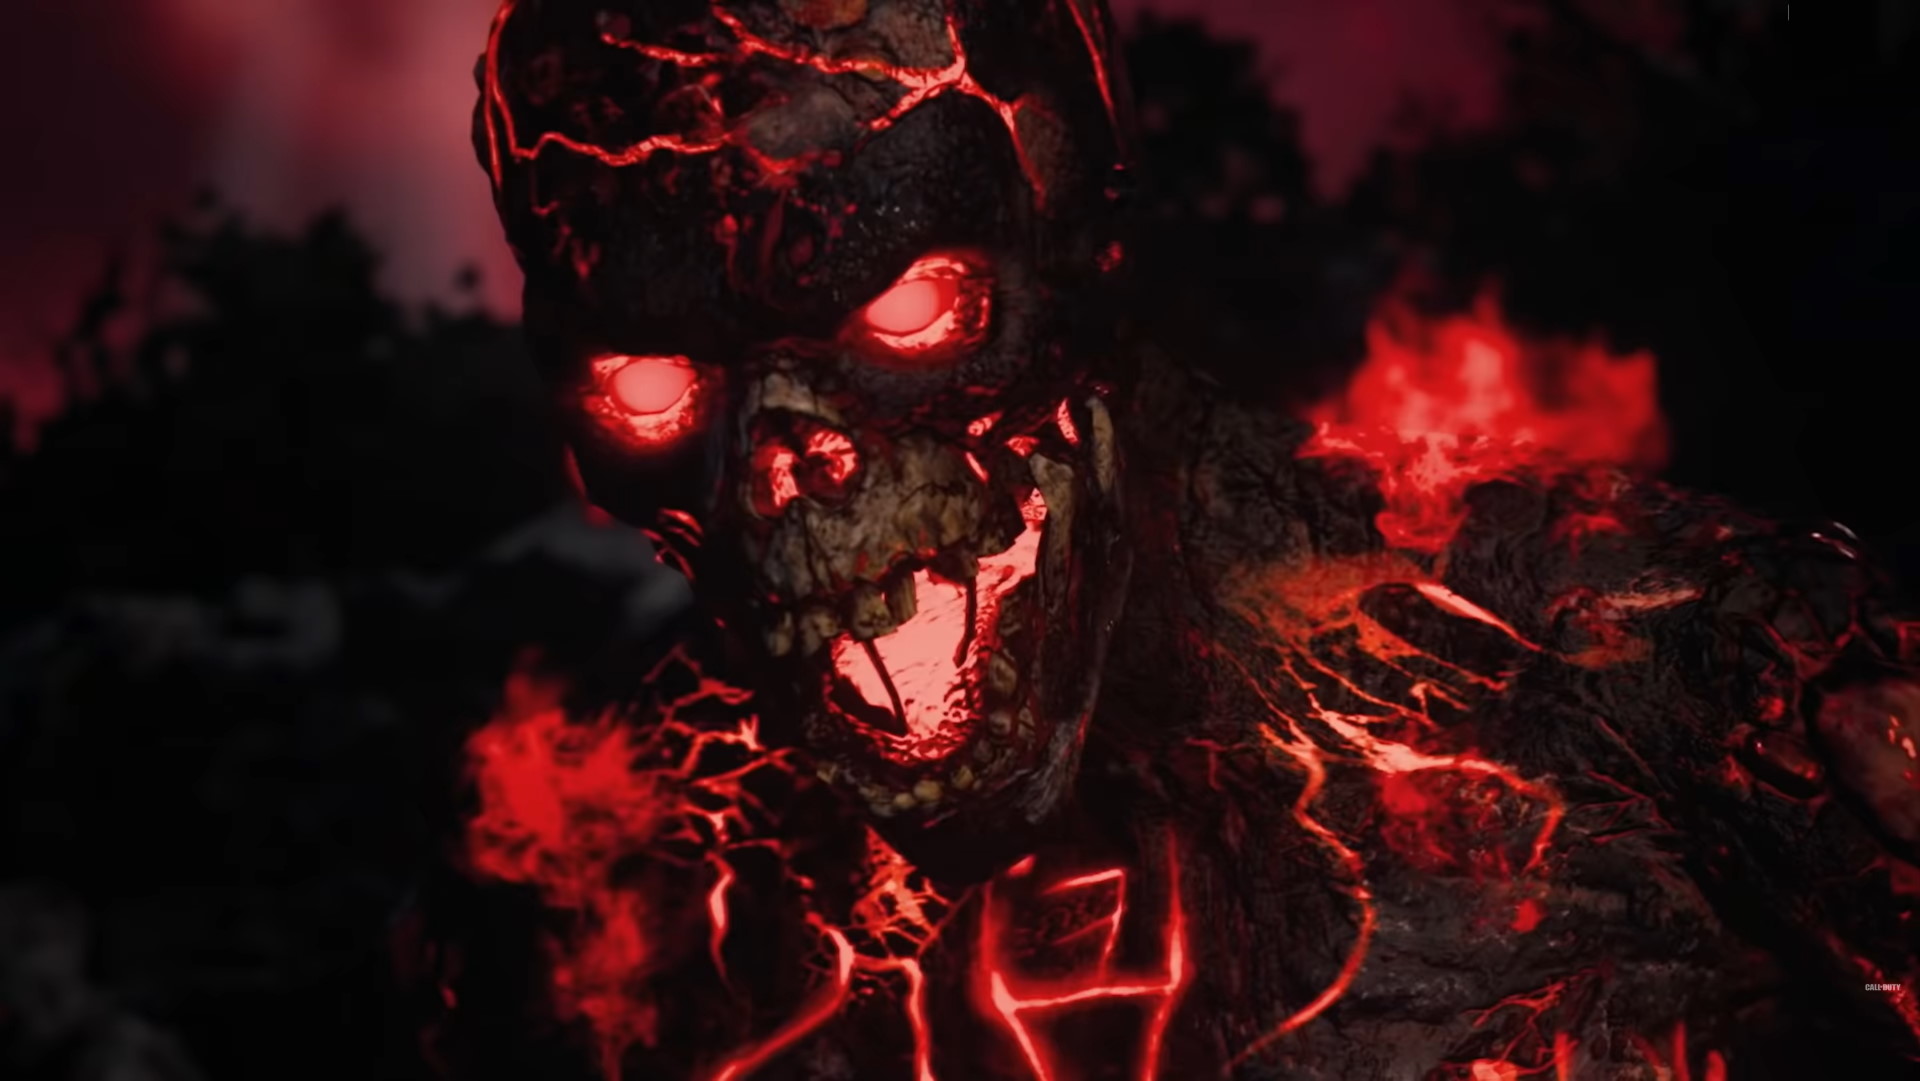 COD Vanguard Zombies Trailer Leaks Ahead of Reveal